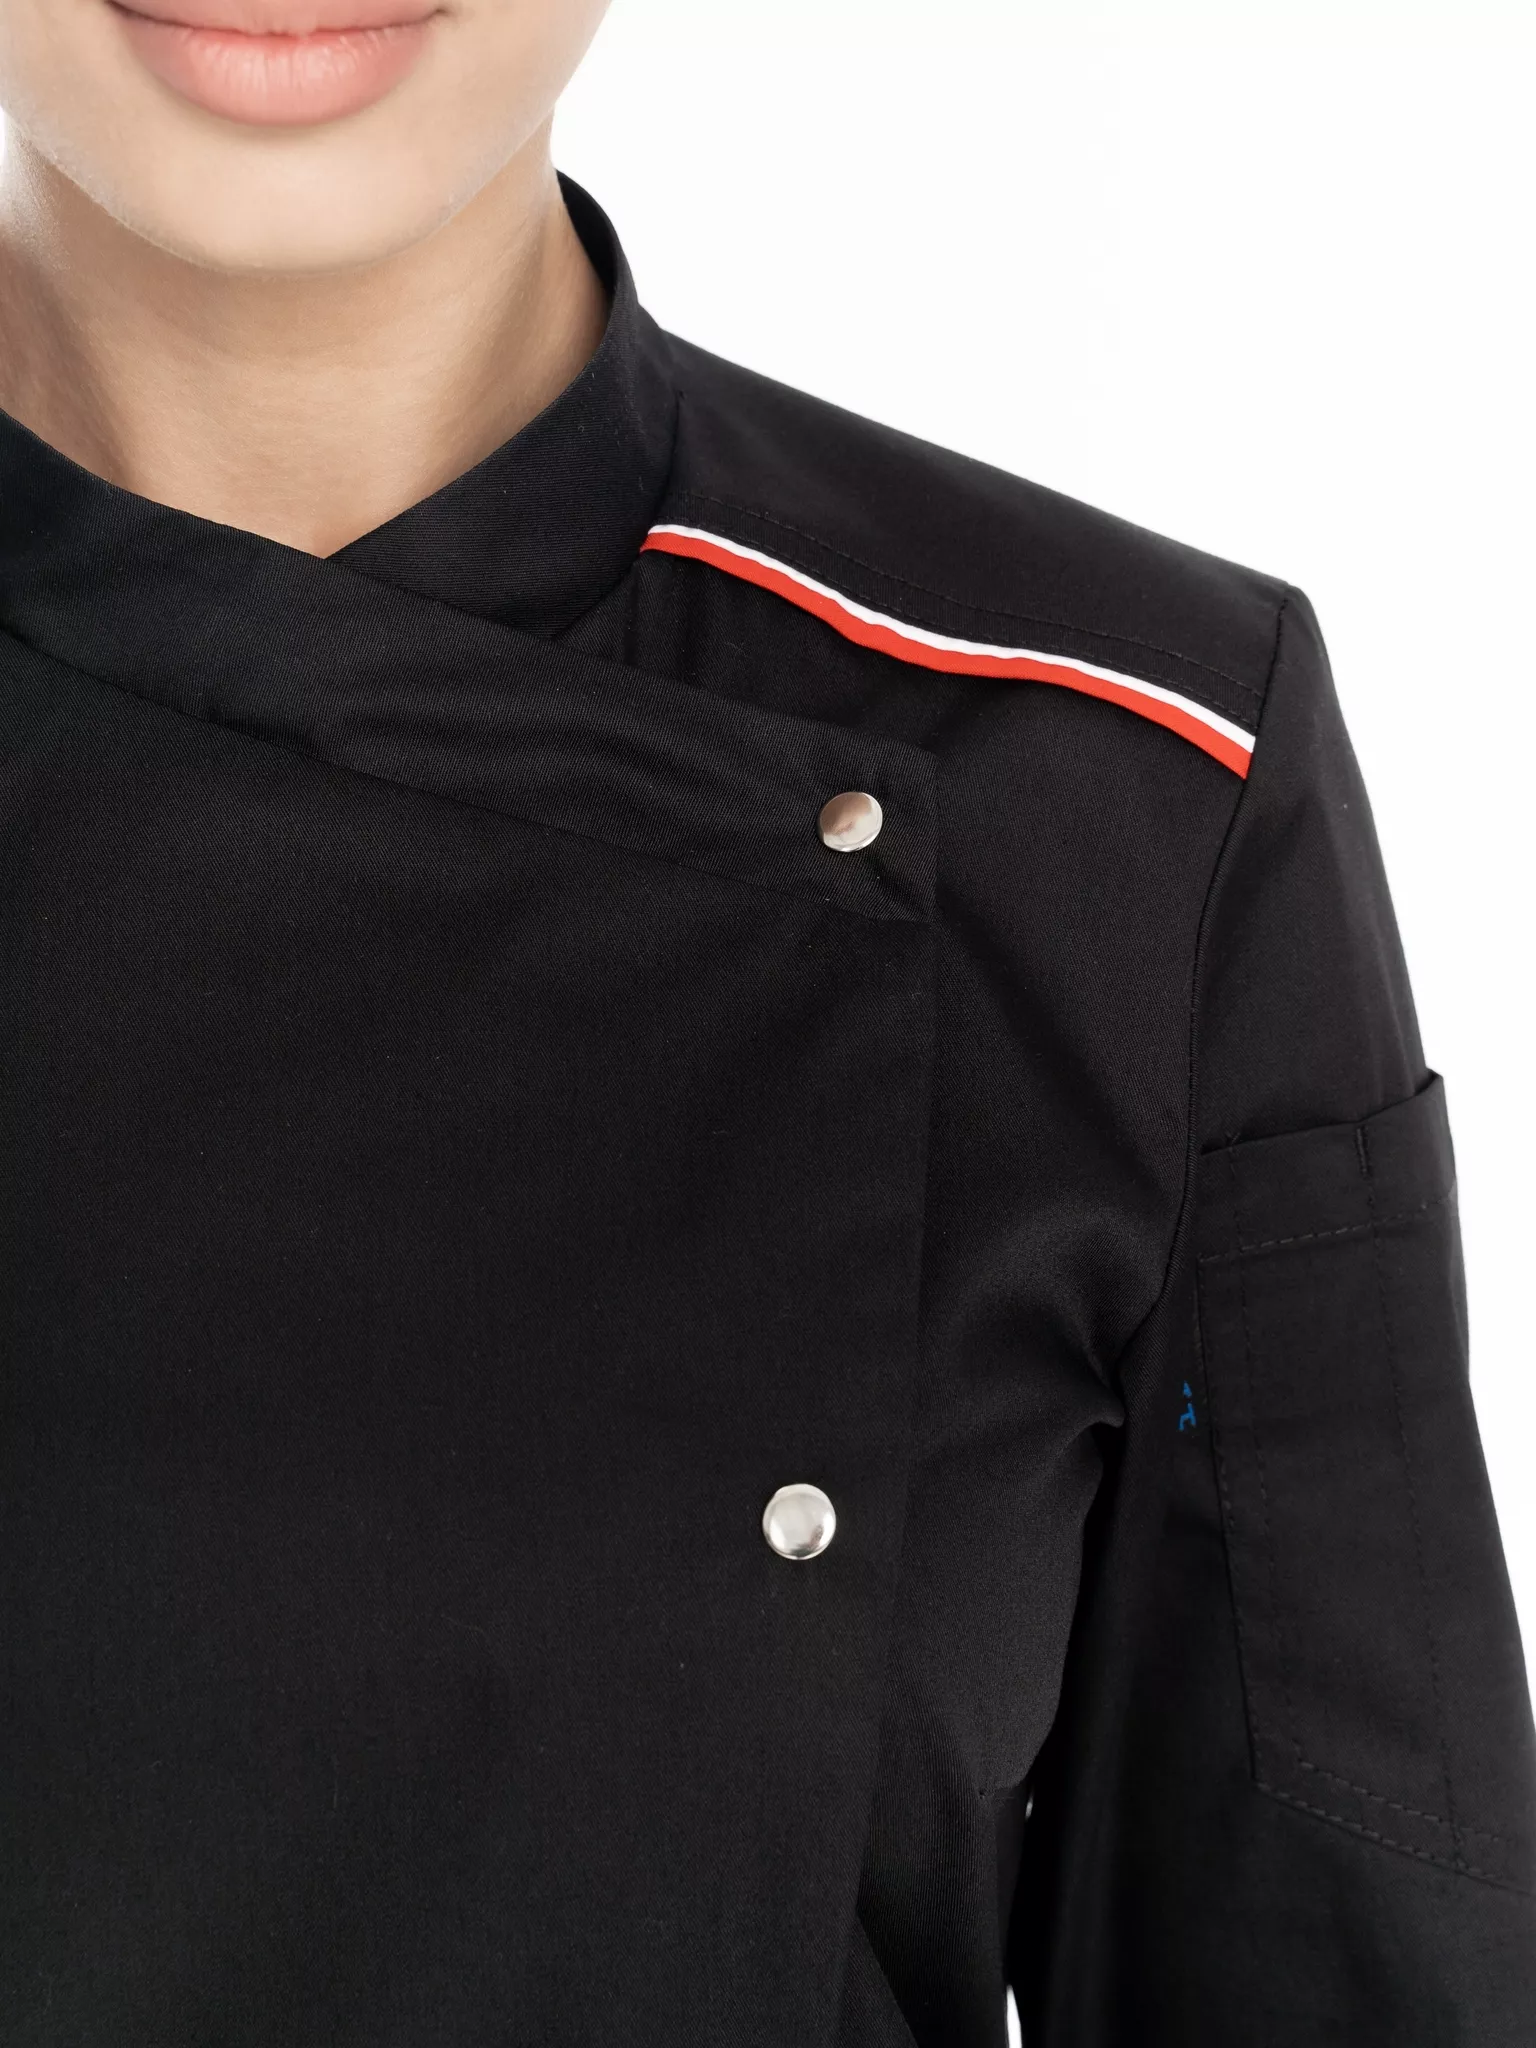 Куртка повара женская КМ.591 р.52-54, рост 170-176 (цвет черный, кант красный, белый)